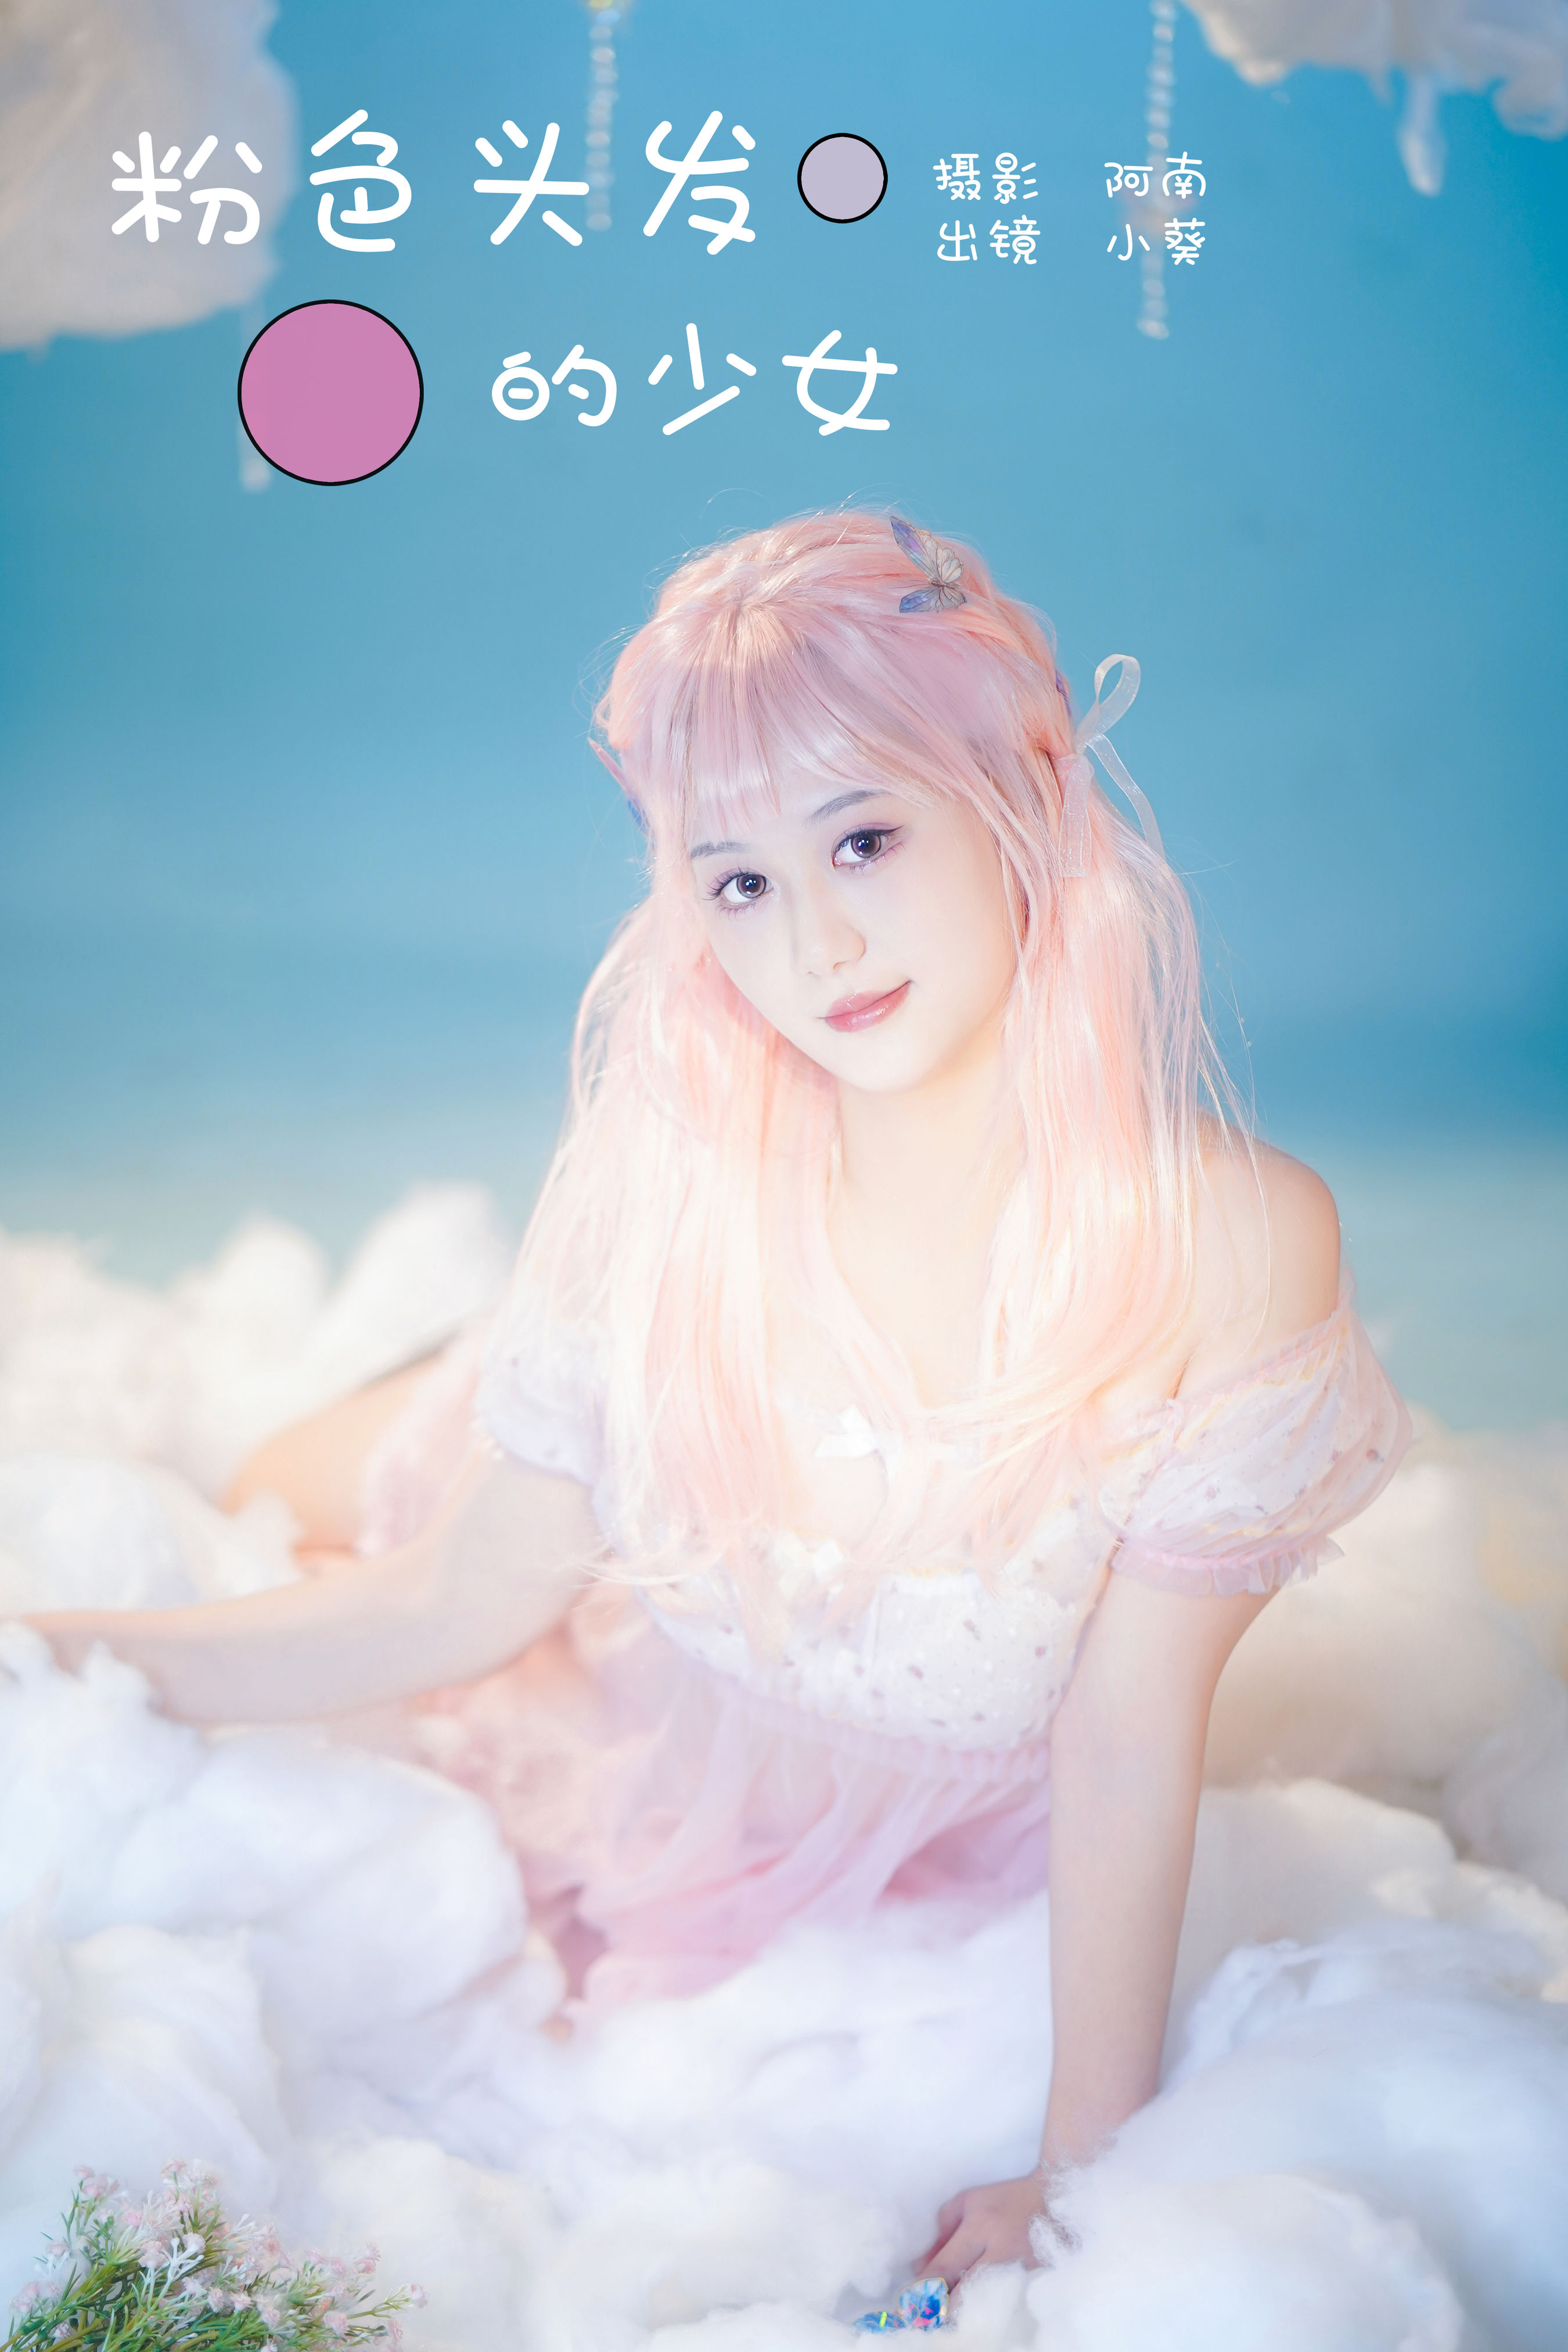 阿南_小葵《粉色头发的少女》美图作品图片1